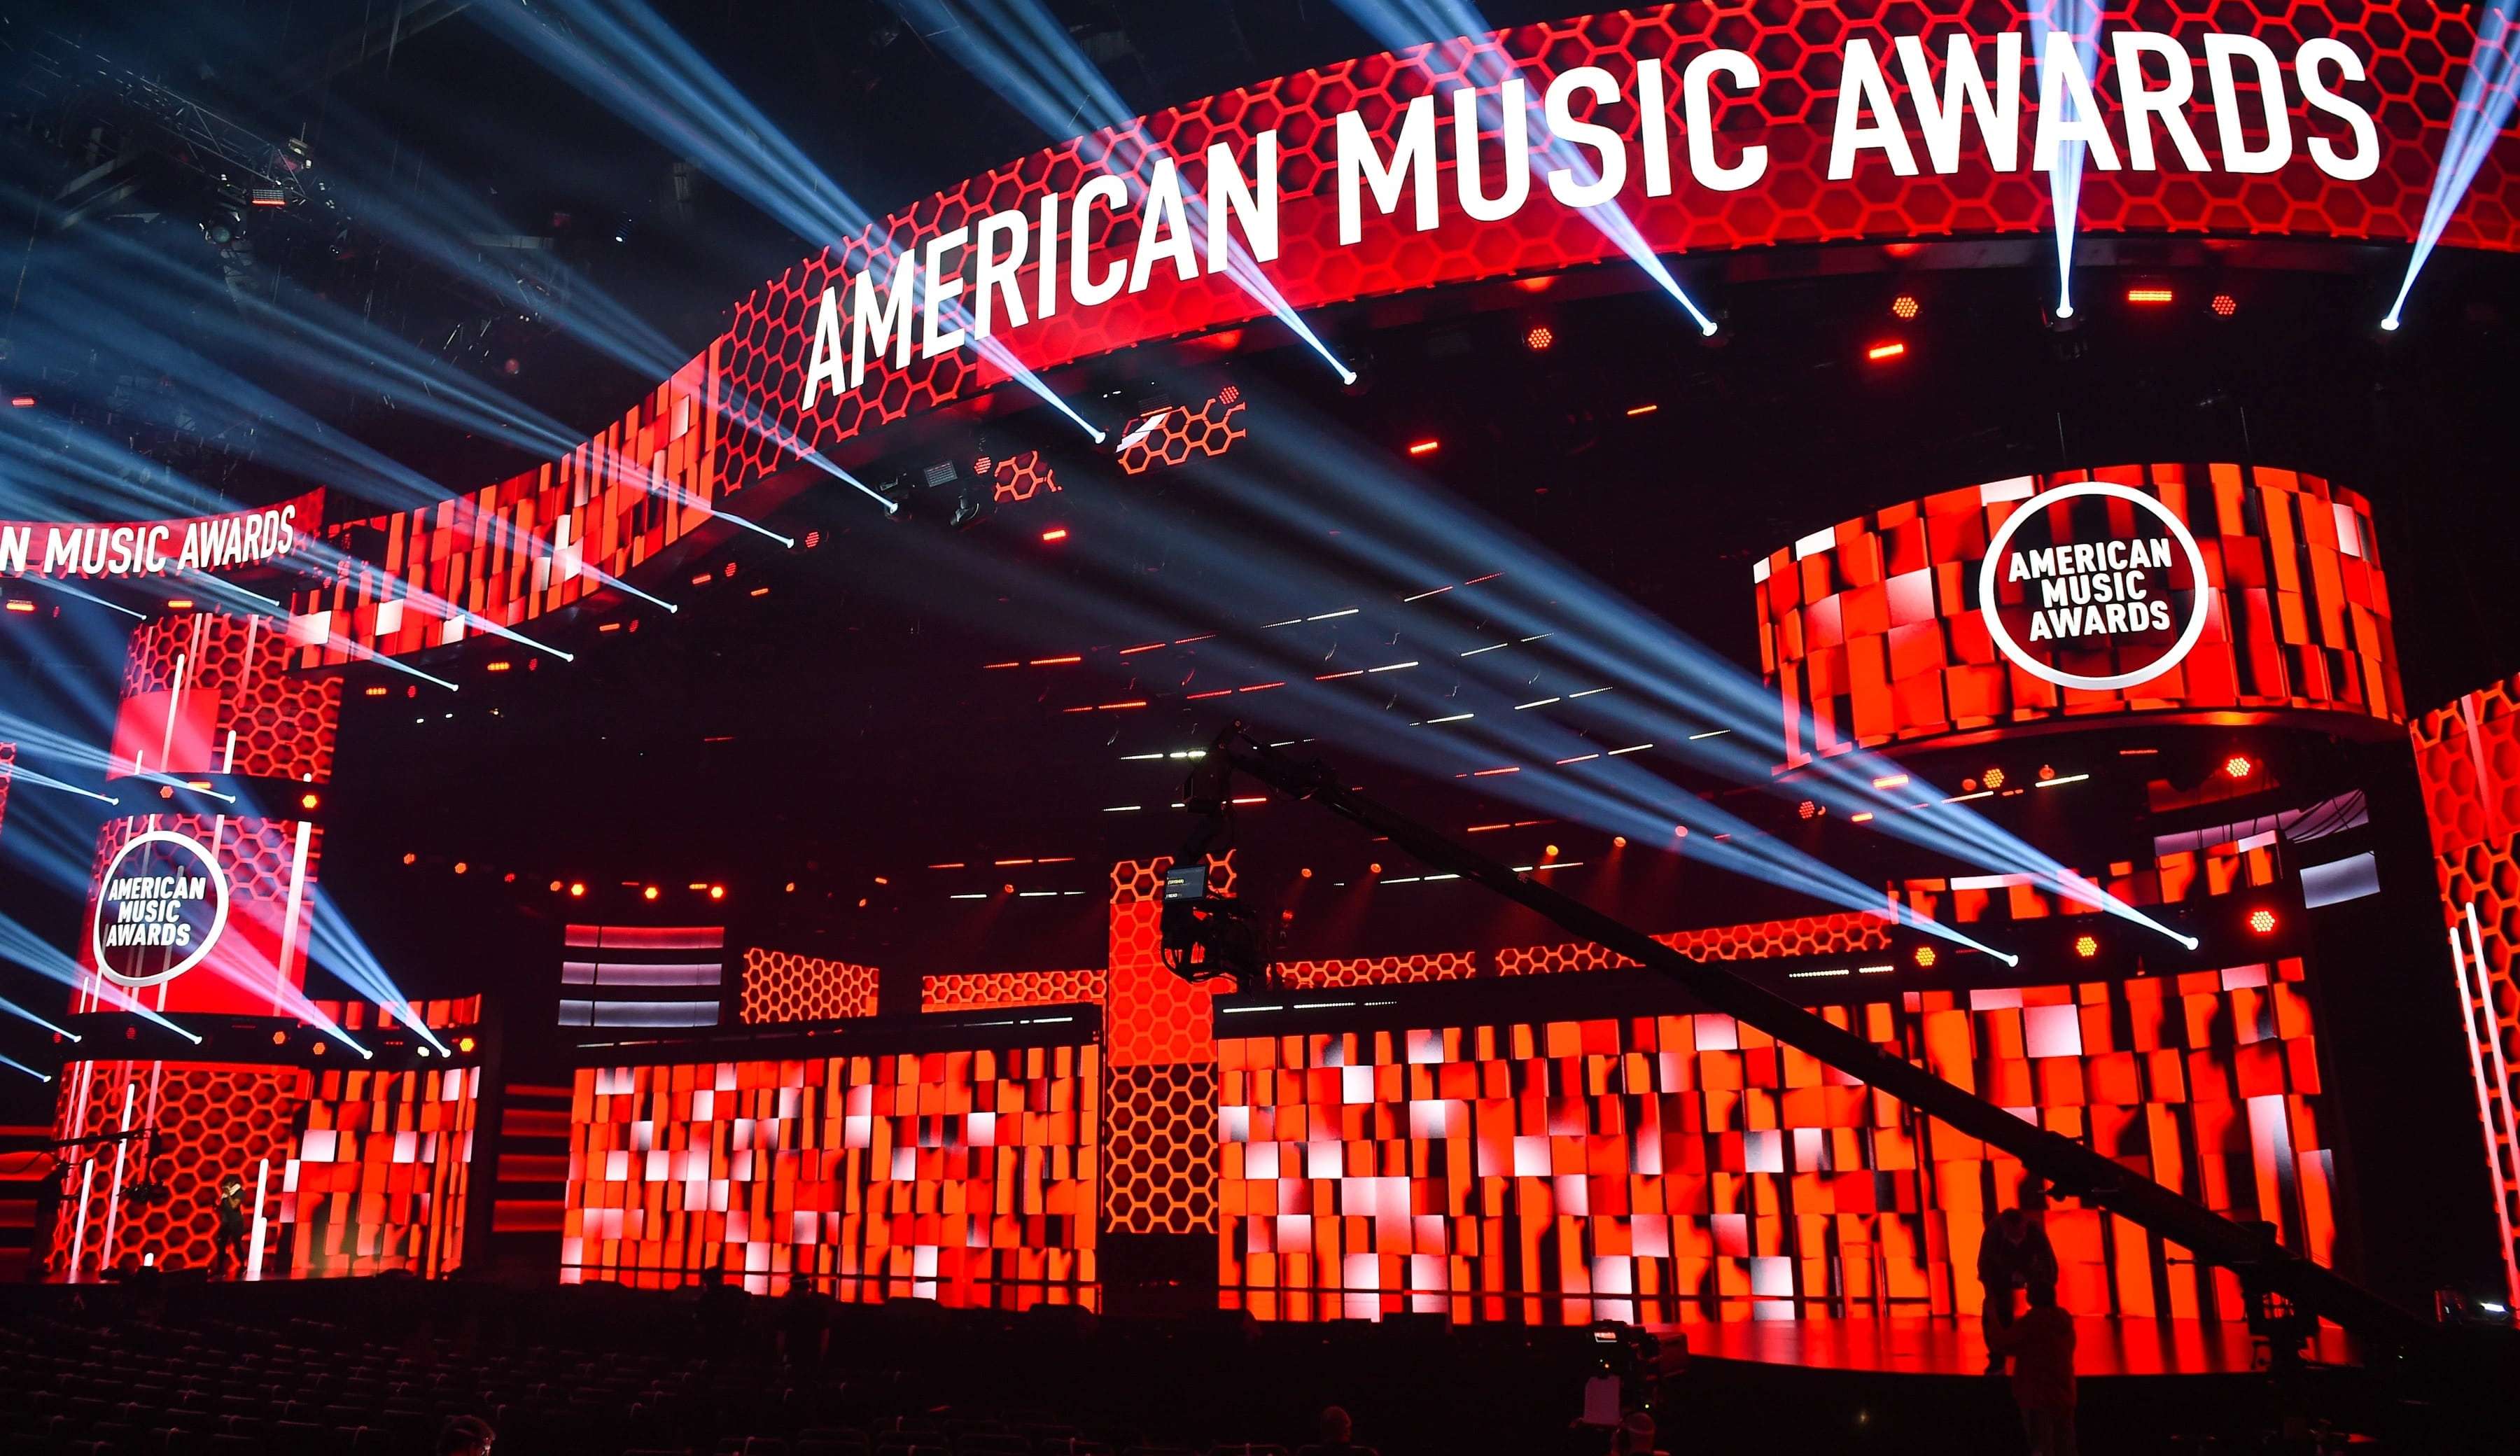 50ª edição do American Music Awards acontece neste domingo, confira as principais atrações da noite